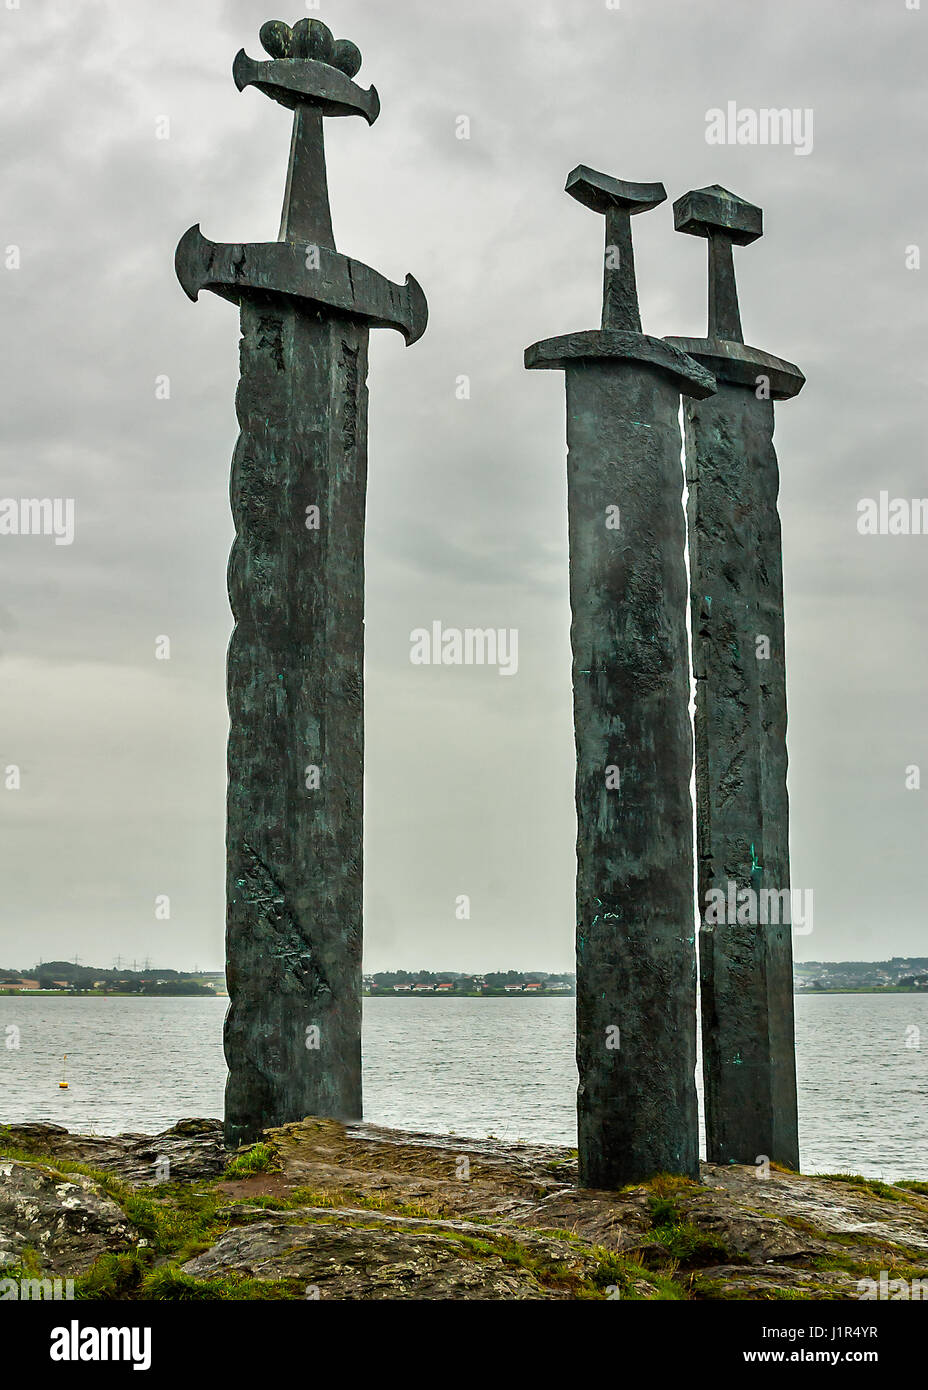 Norwegen, Stavanger. Das Monument "Schwerter im Felsen" symbolisiert das  Ende der mörderische Kriege und Beginn der Vereinigung von Norwegen  Stockfotografie - Alamy